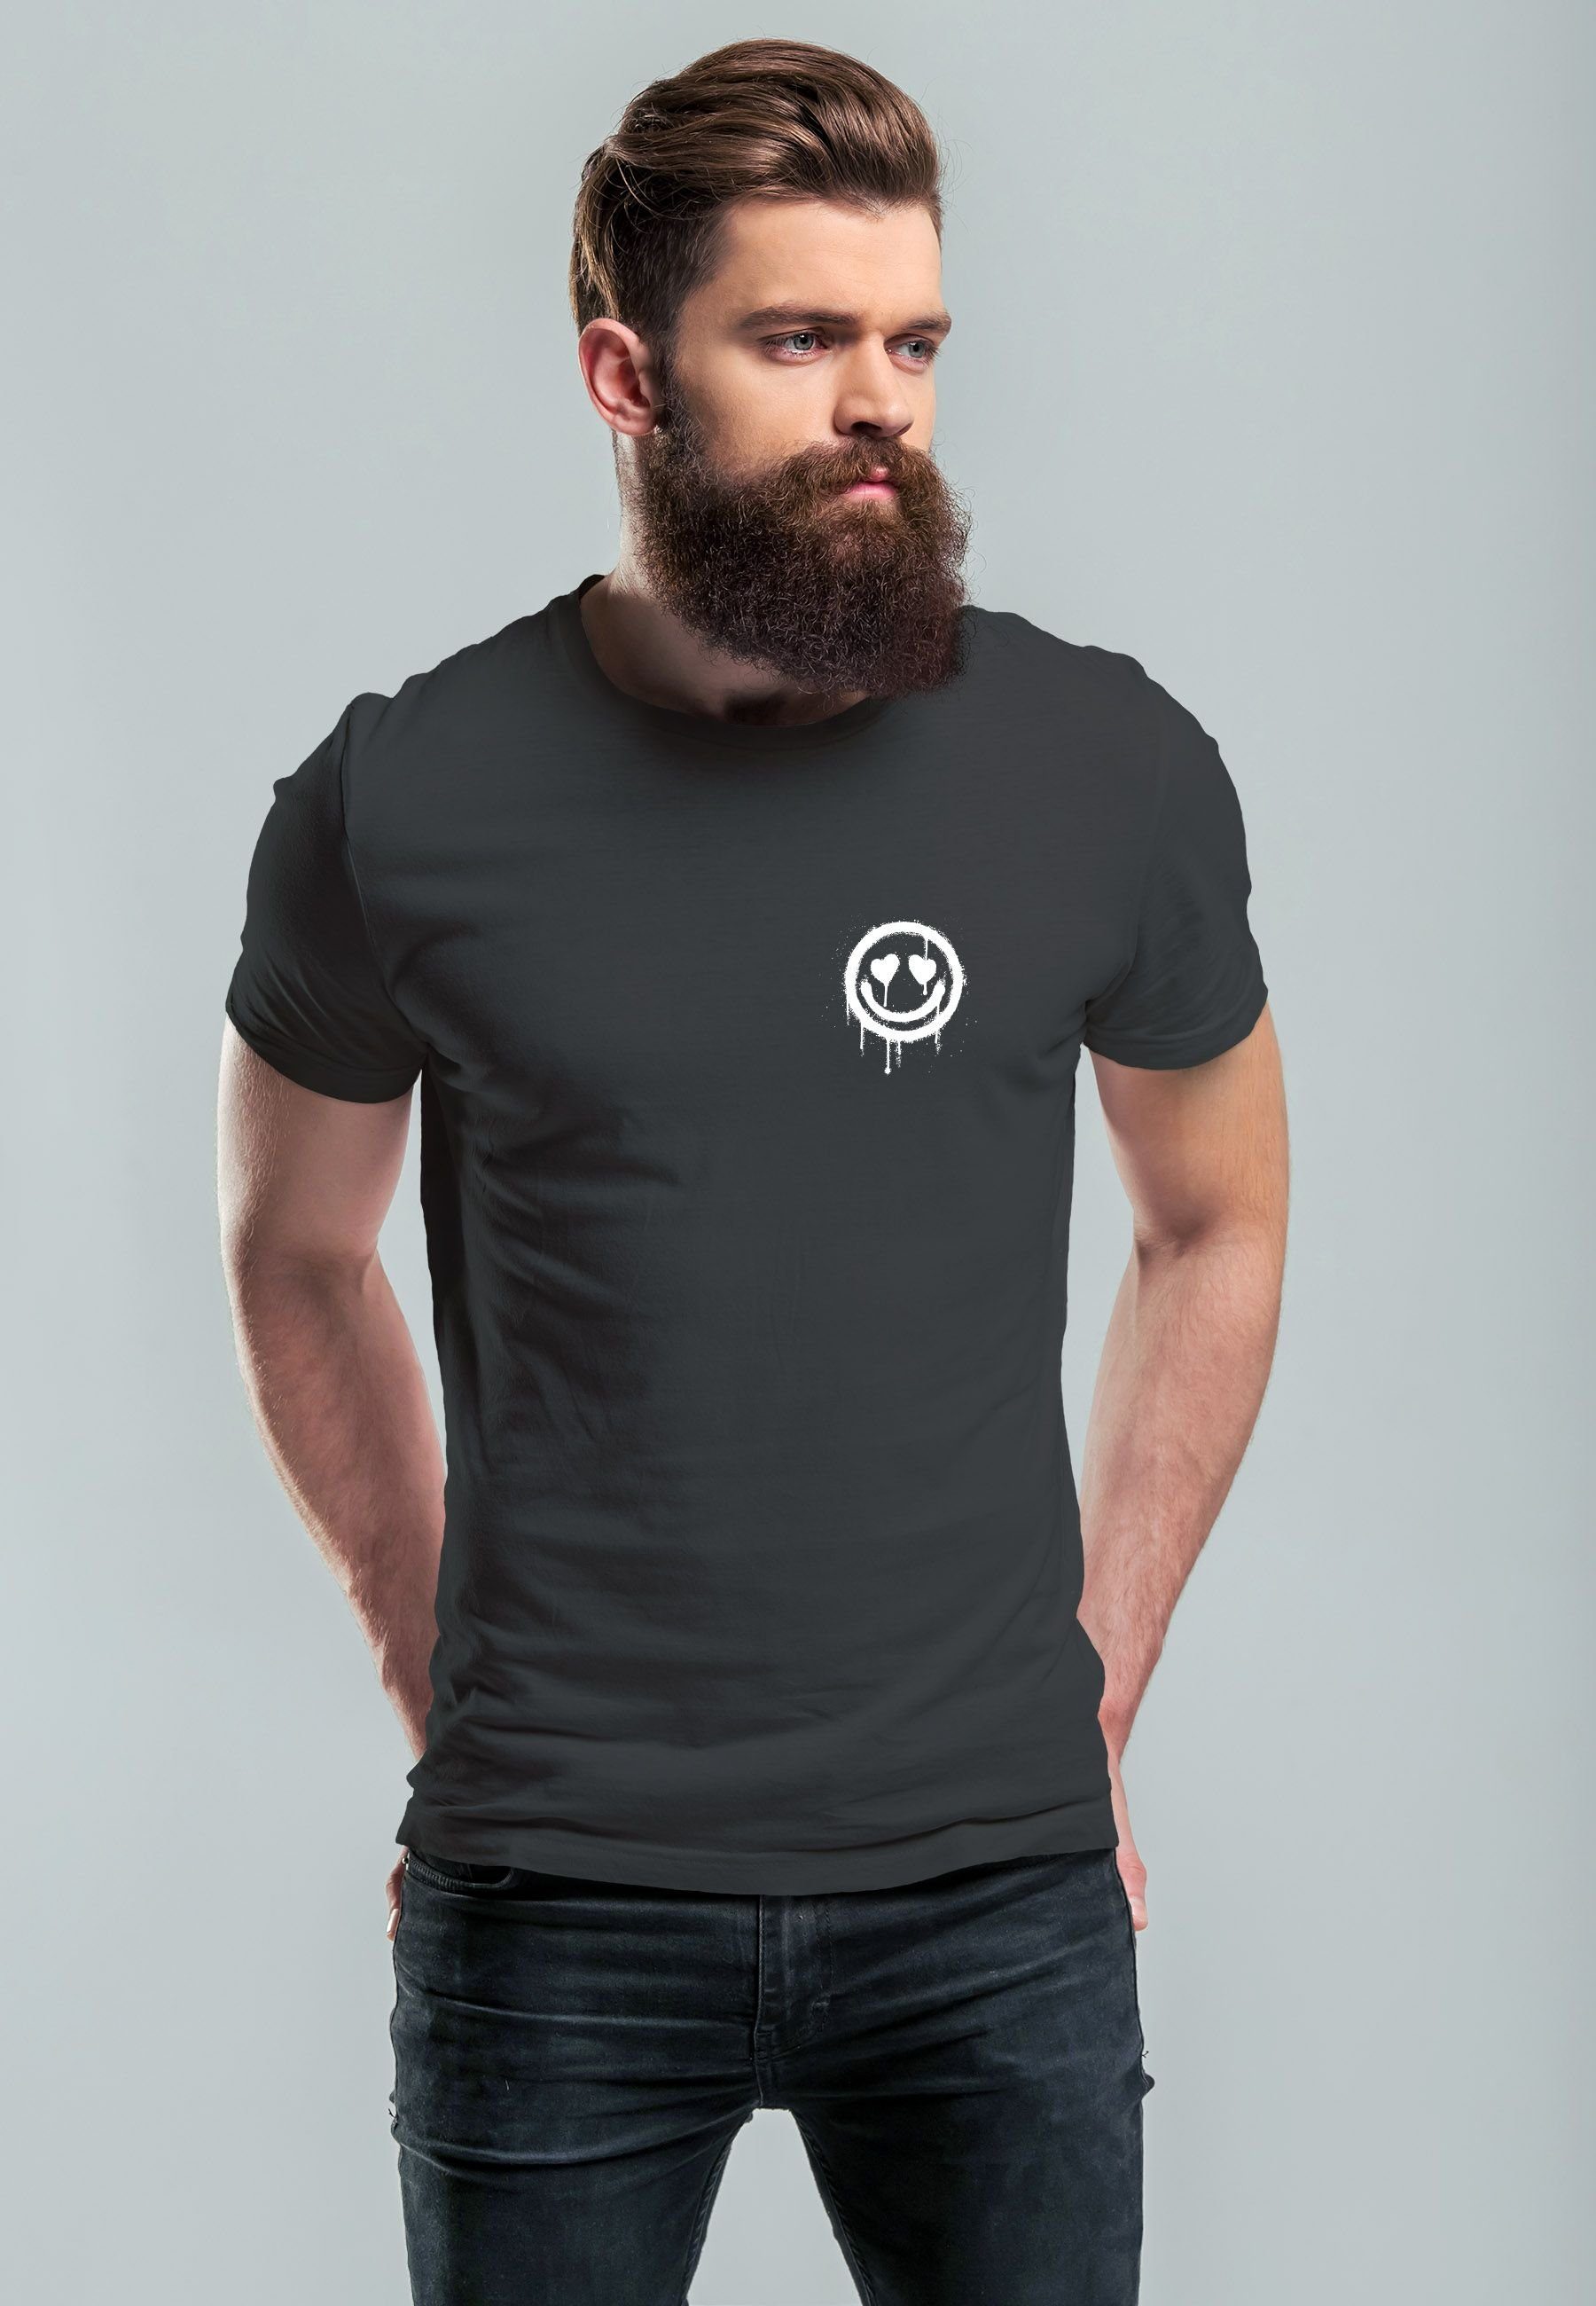 Neverless Print-Shirt Herren T-Shirt Aufdruck Face mit Print Drip Print Smile Herz-Augen anthrazit Drippy Motiv